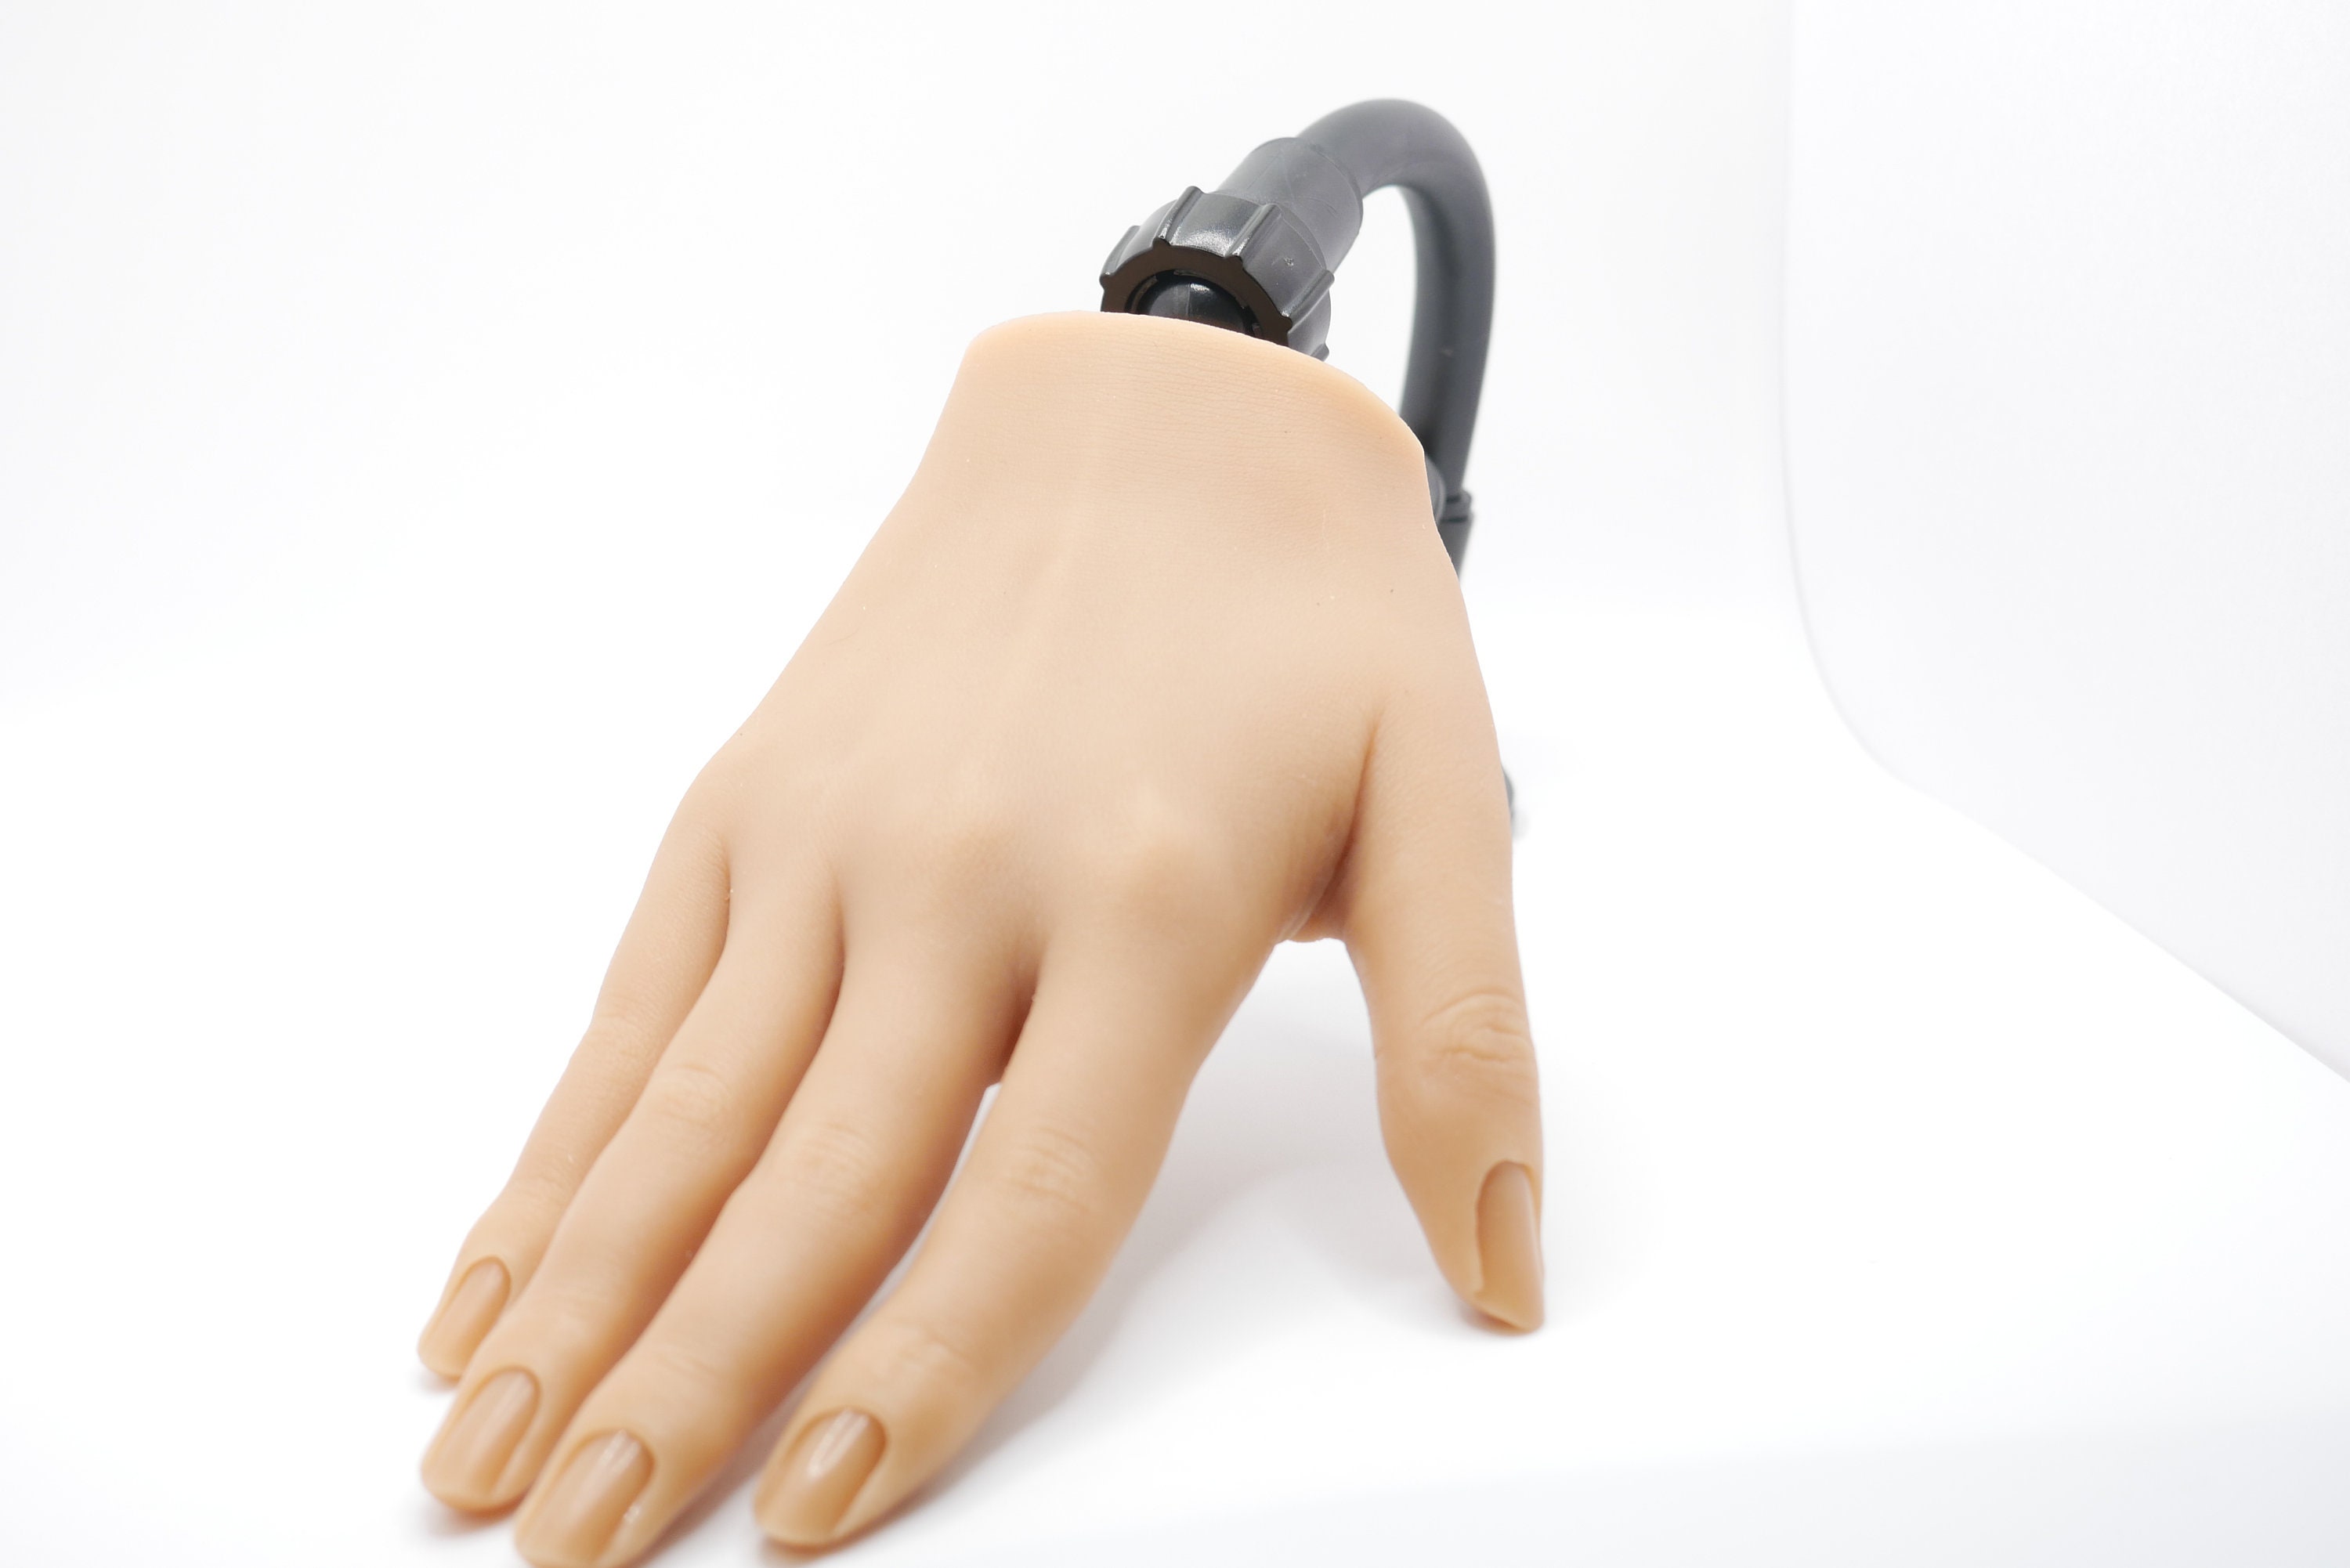 Realistic Silicone Female Right Hand 